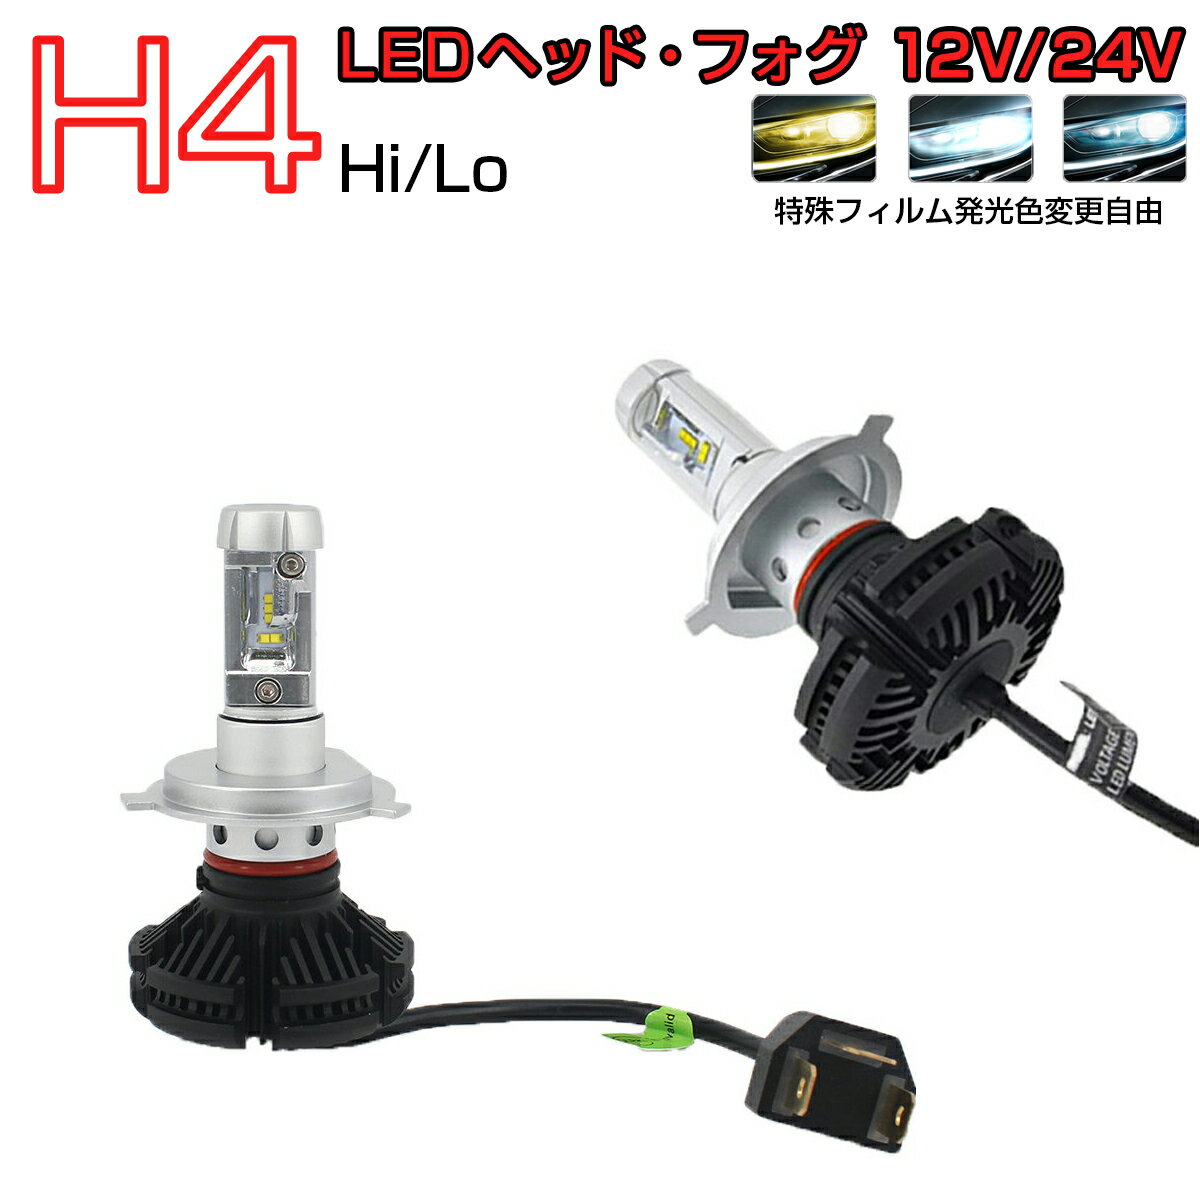 YAMAHA用の非純正品 XJR1200R ヘッドライト(LO)[H4(Hi Lo)]白色 LED H4 HI LO 2個入り LEDヘッドライト 6000LM 12V 24V 6500K 6ヶ月保証